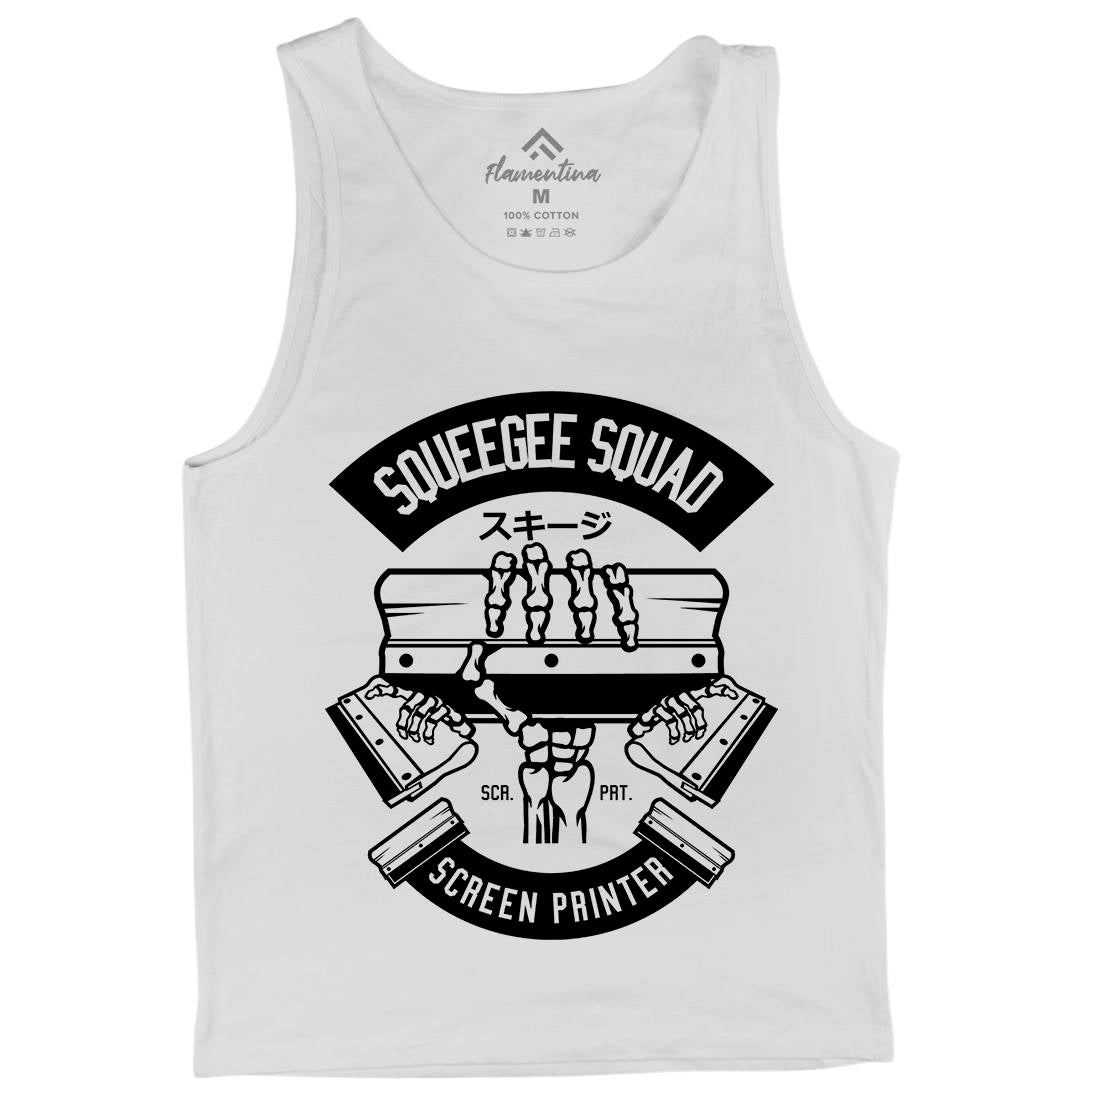 Squeegee Squad Mens Tank Top Vest Retro B642